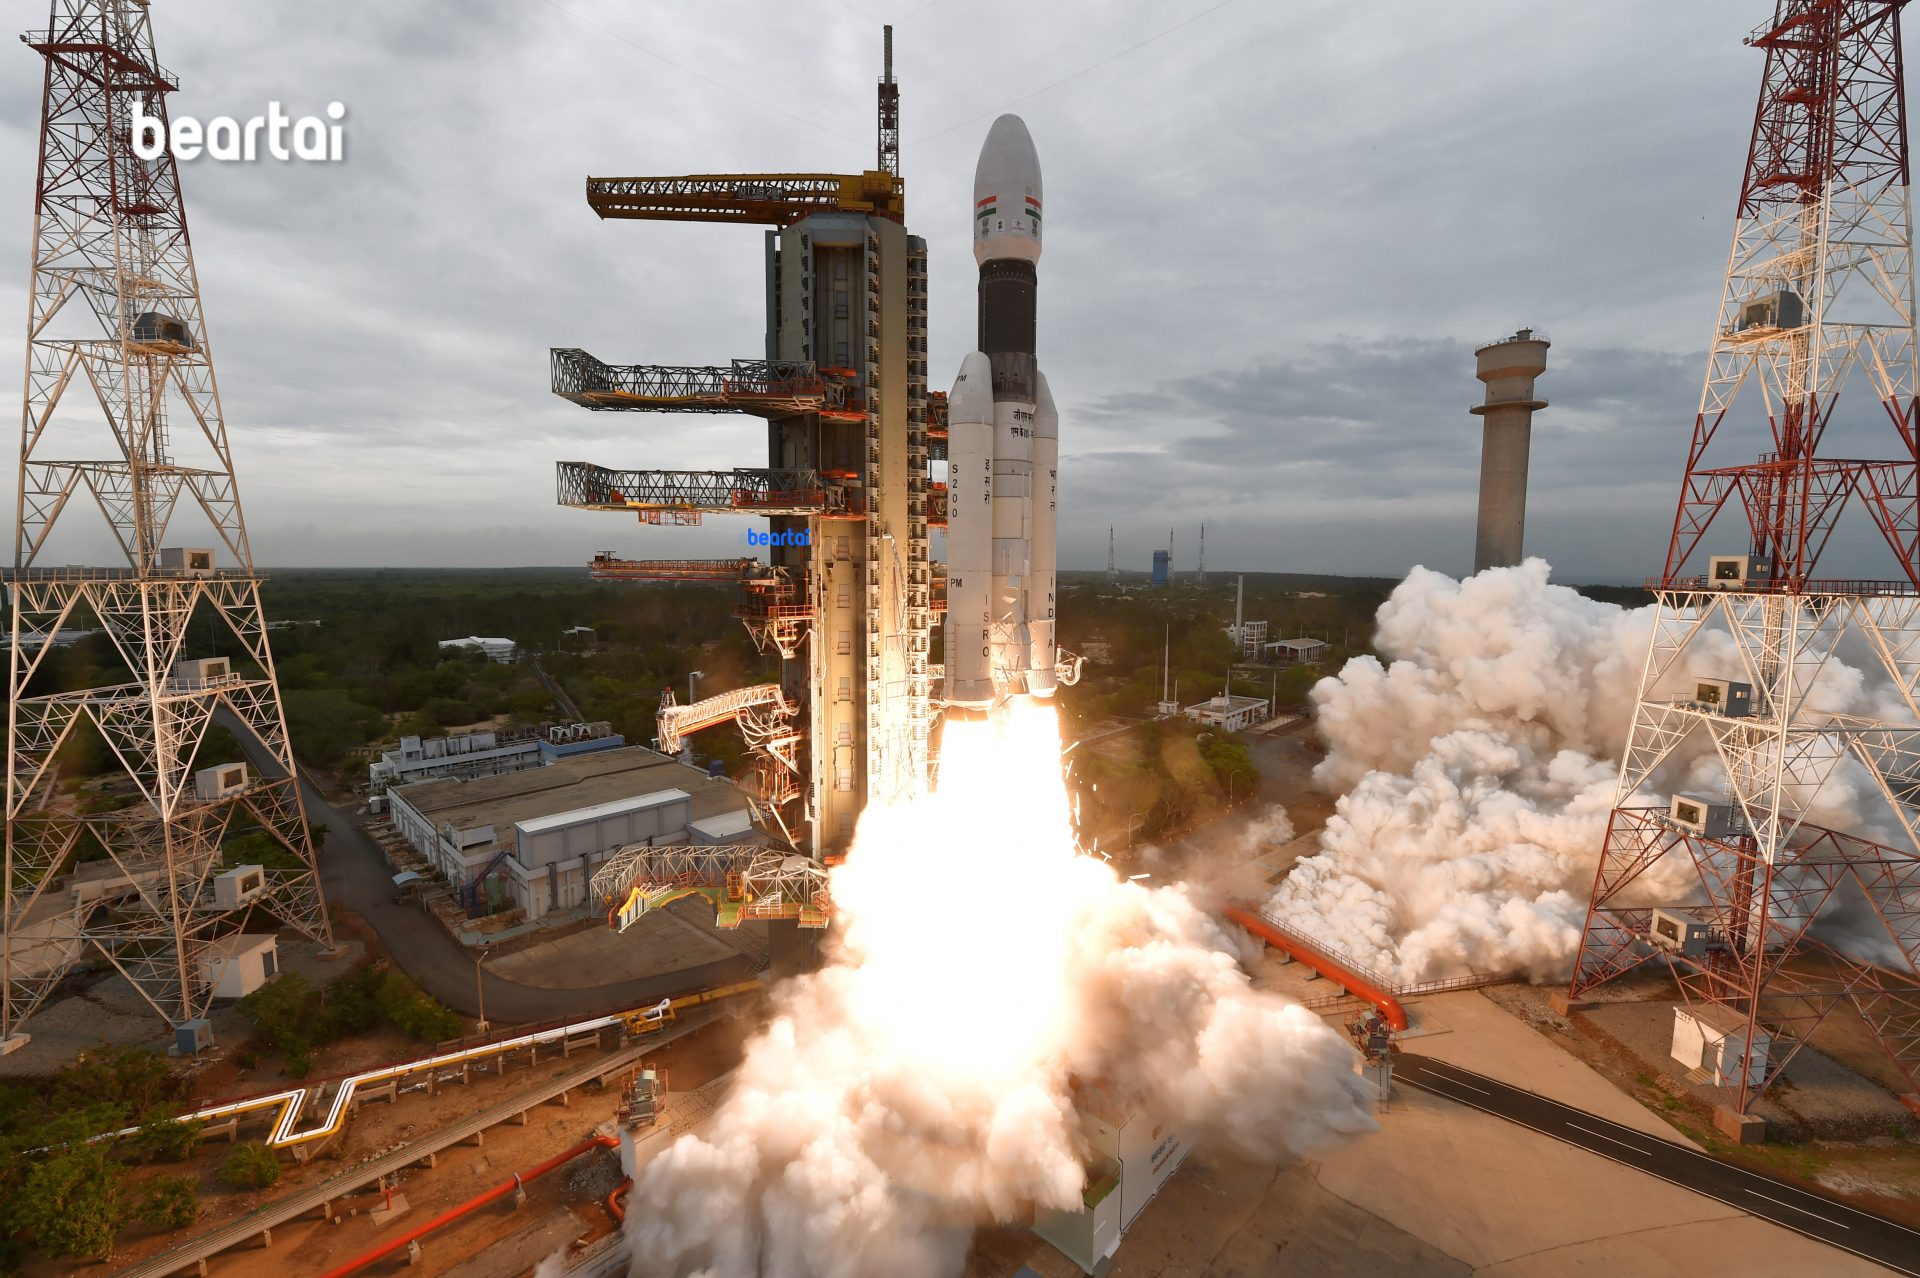 ชัดแล้ว! Vikram ยานสำรวจอินเดียชนดวงจันทร์ใกล้เป้าหมาย 500 ม. ยังทำงานเก็บข้อมูลได้